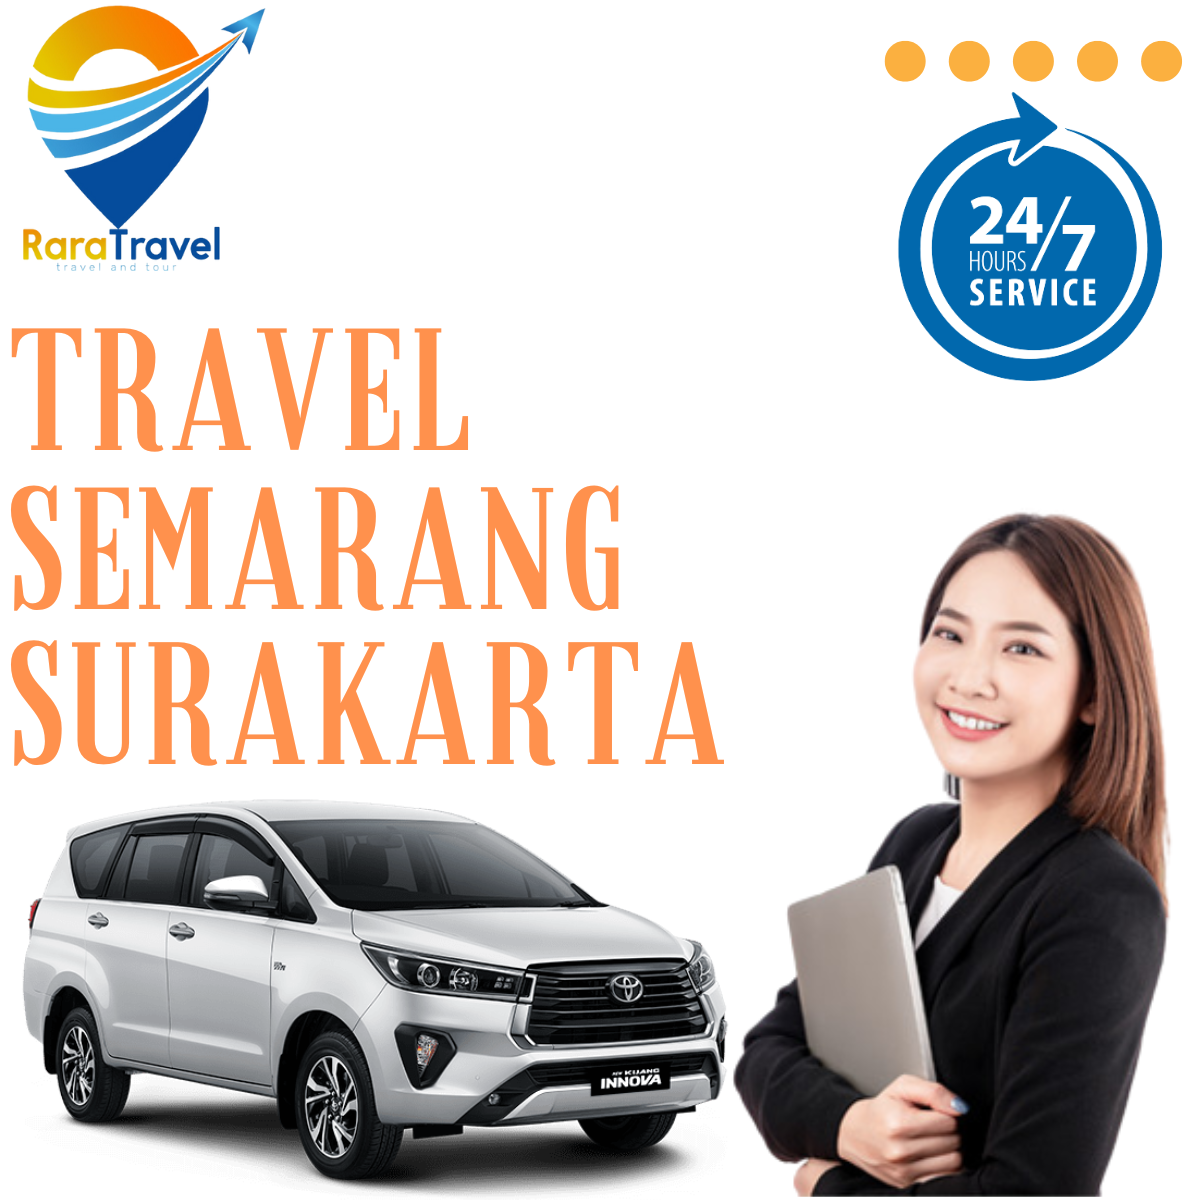 Travel Semarang Surakarta PP Murah - RARATRAVEL.ID